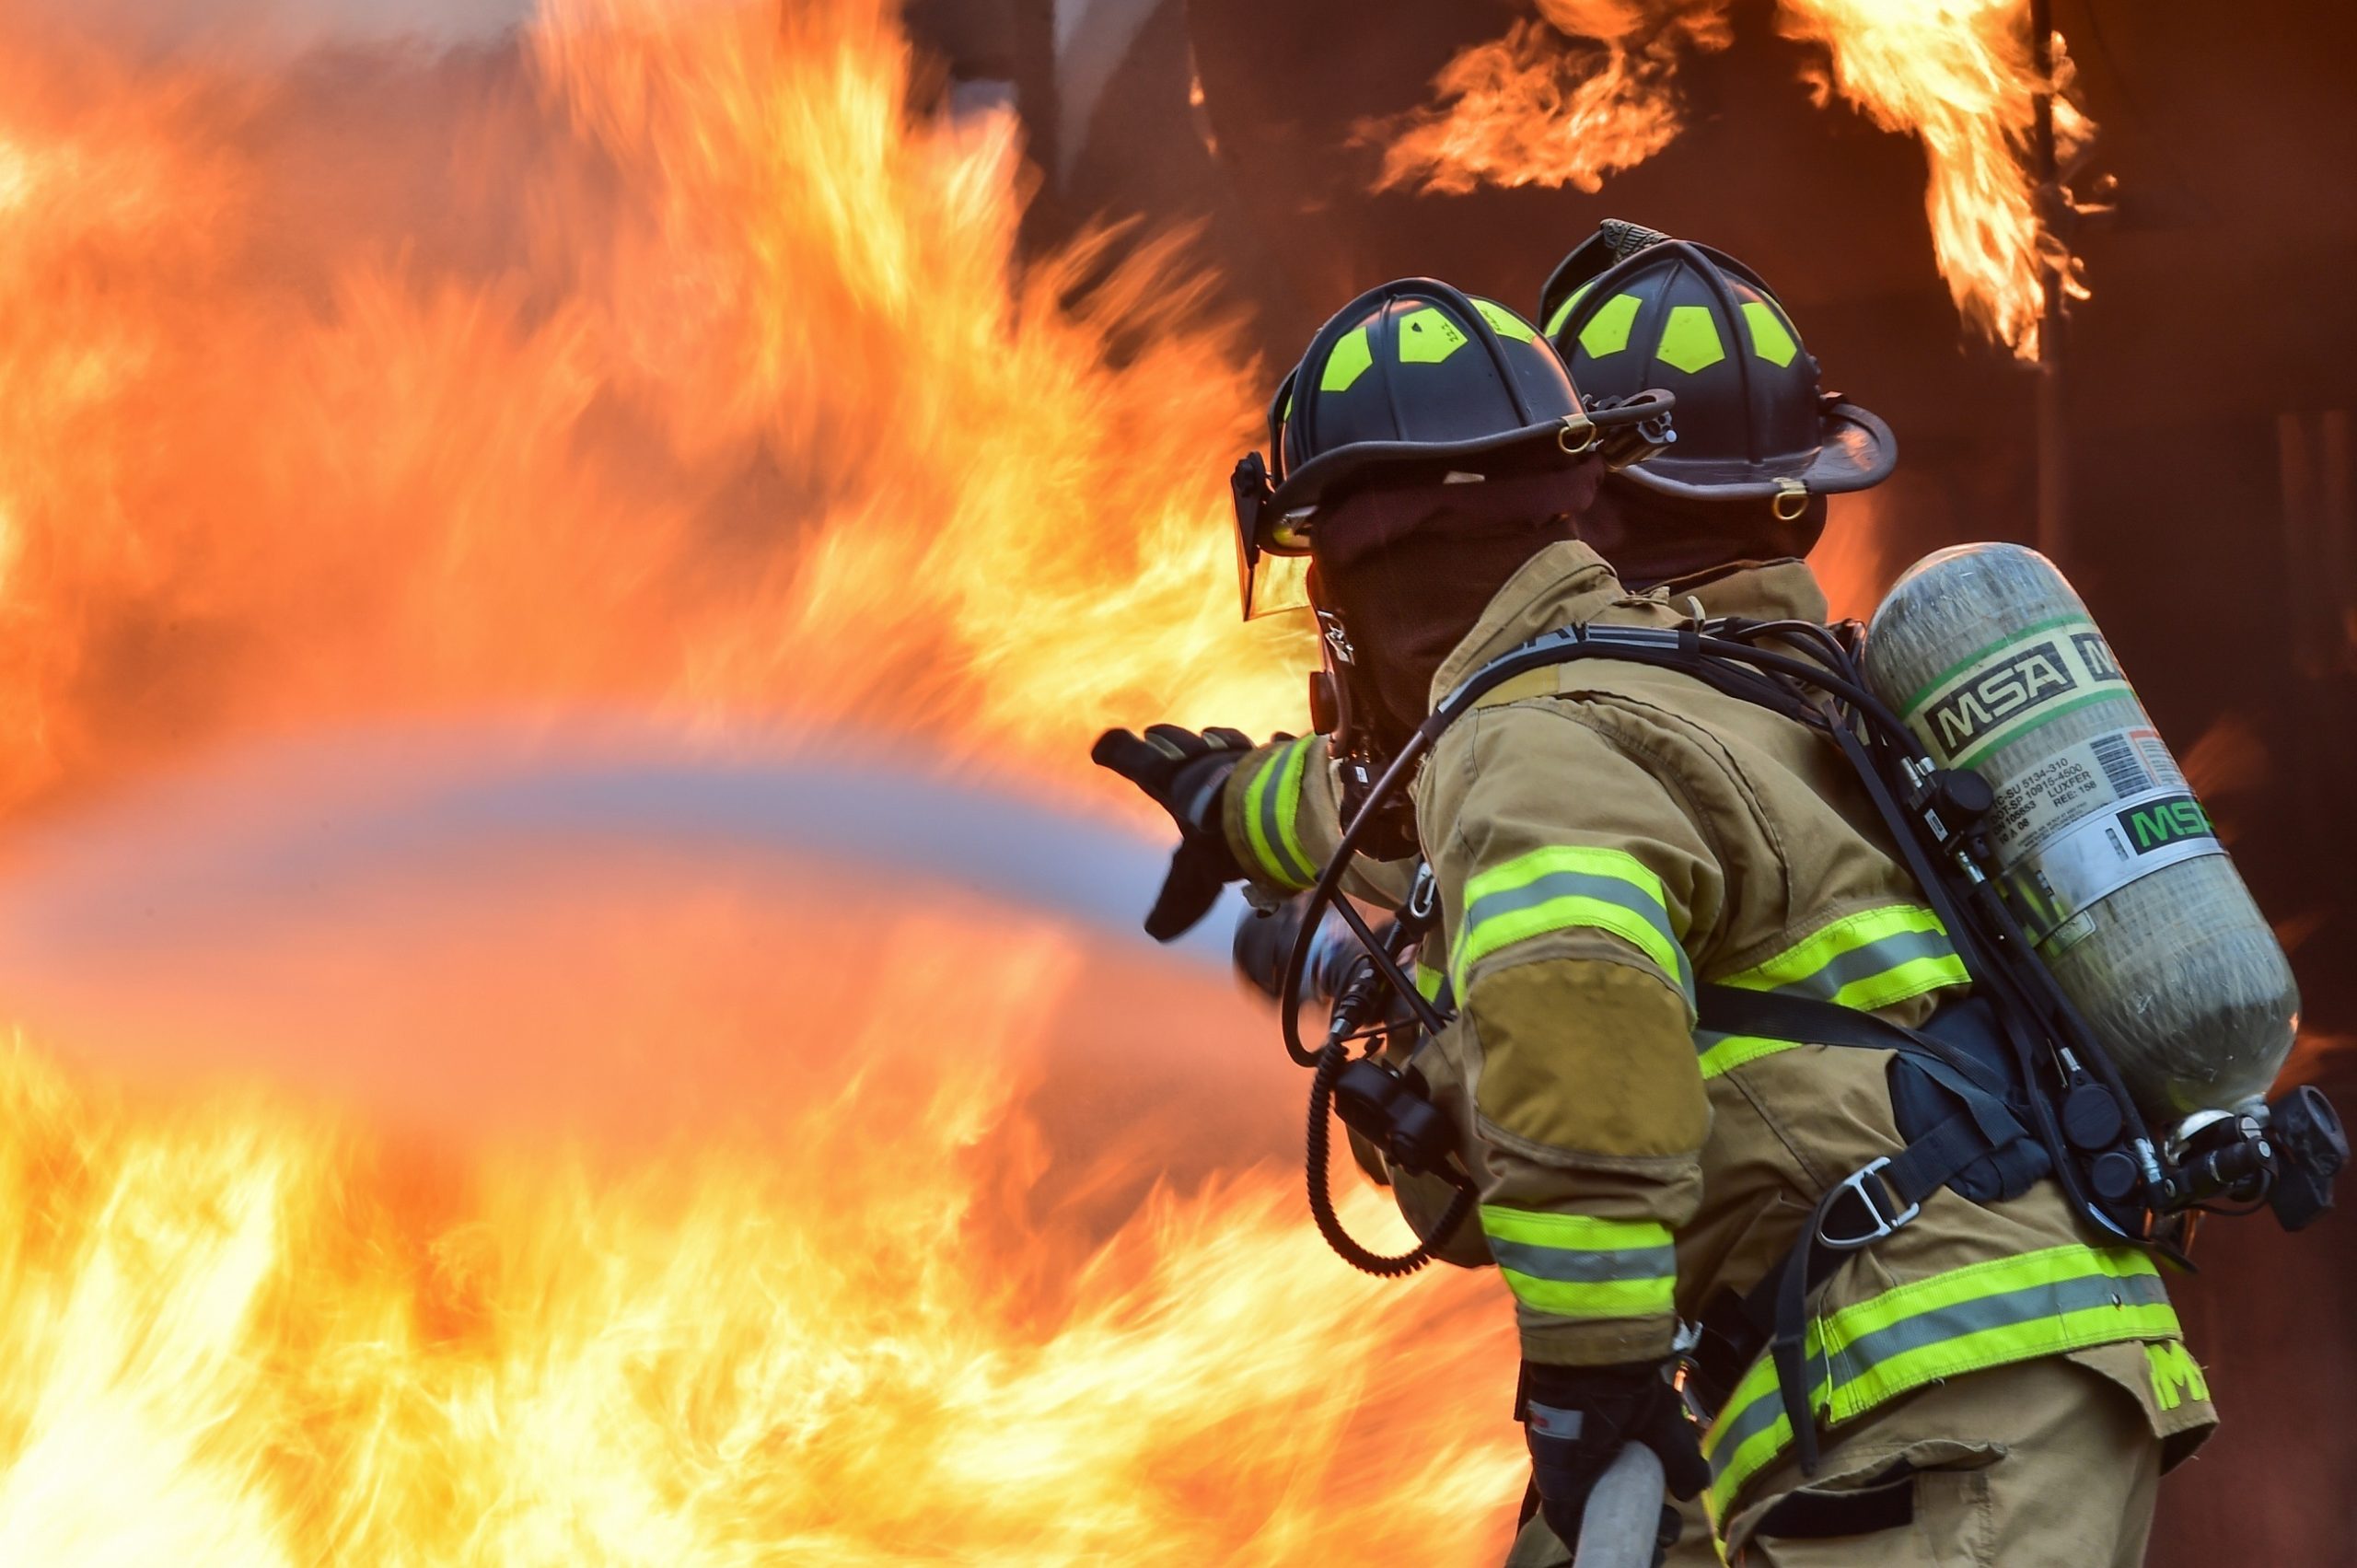 ¿Cómo actúa tu seguro del hogar ante un incendio?